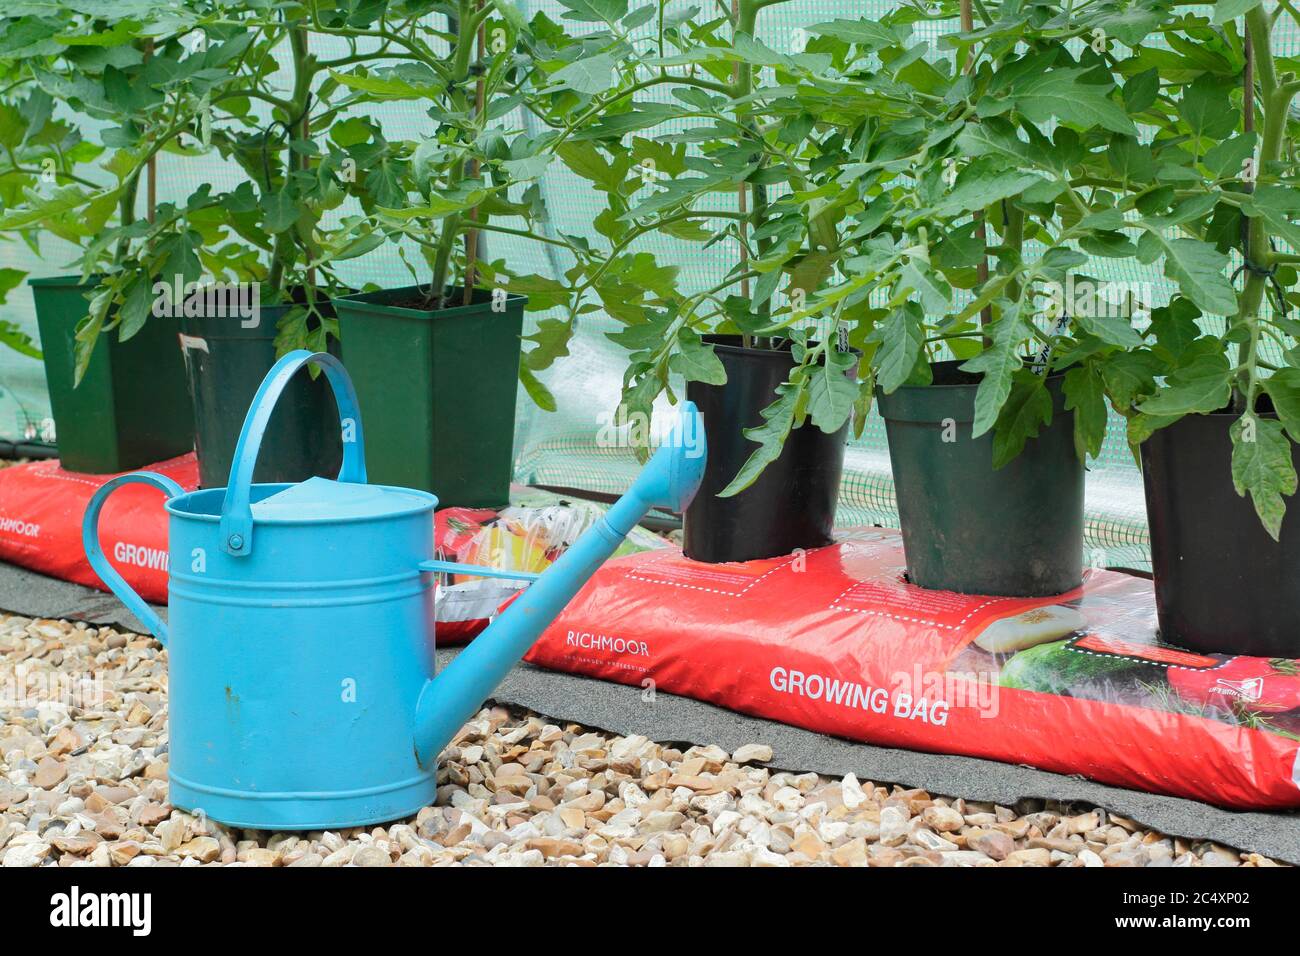 Solanum lycopersicum. Piante di pomodoro coltivate in casa che crescono in pentole senza fondo messe in una borsa di crescita per aumentare il volume di composto disponibile alla pianta. Foto Stock